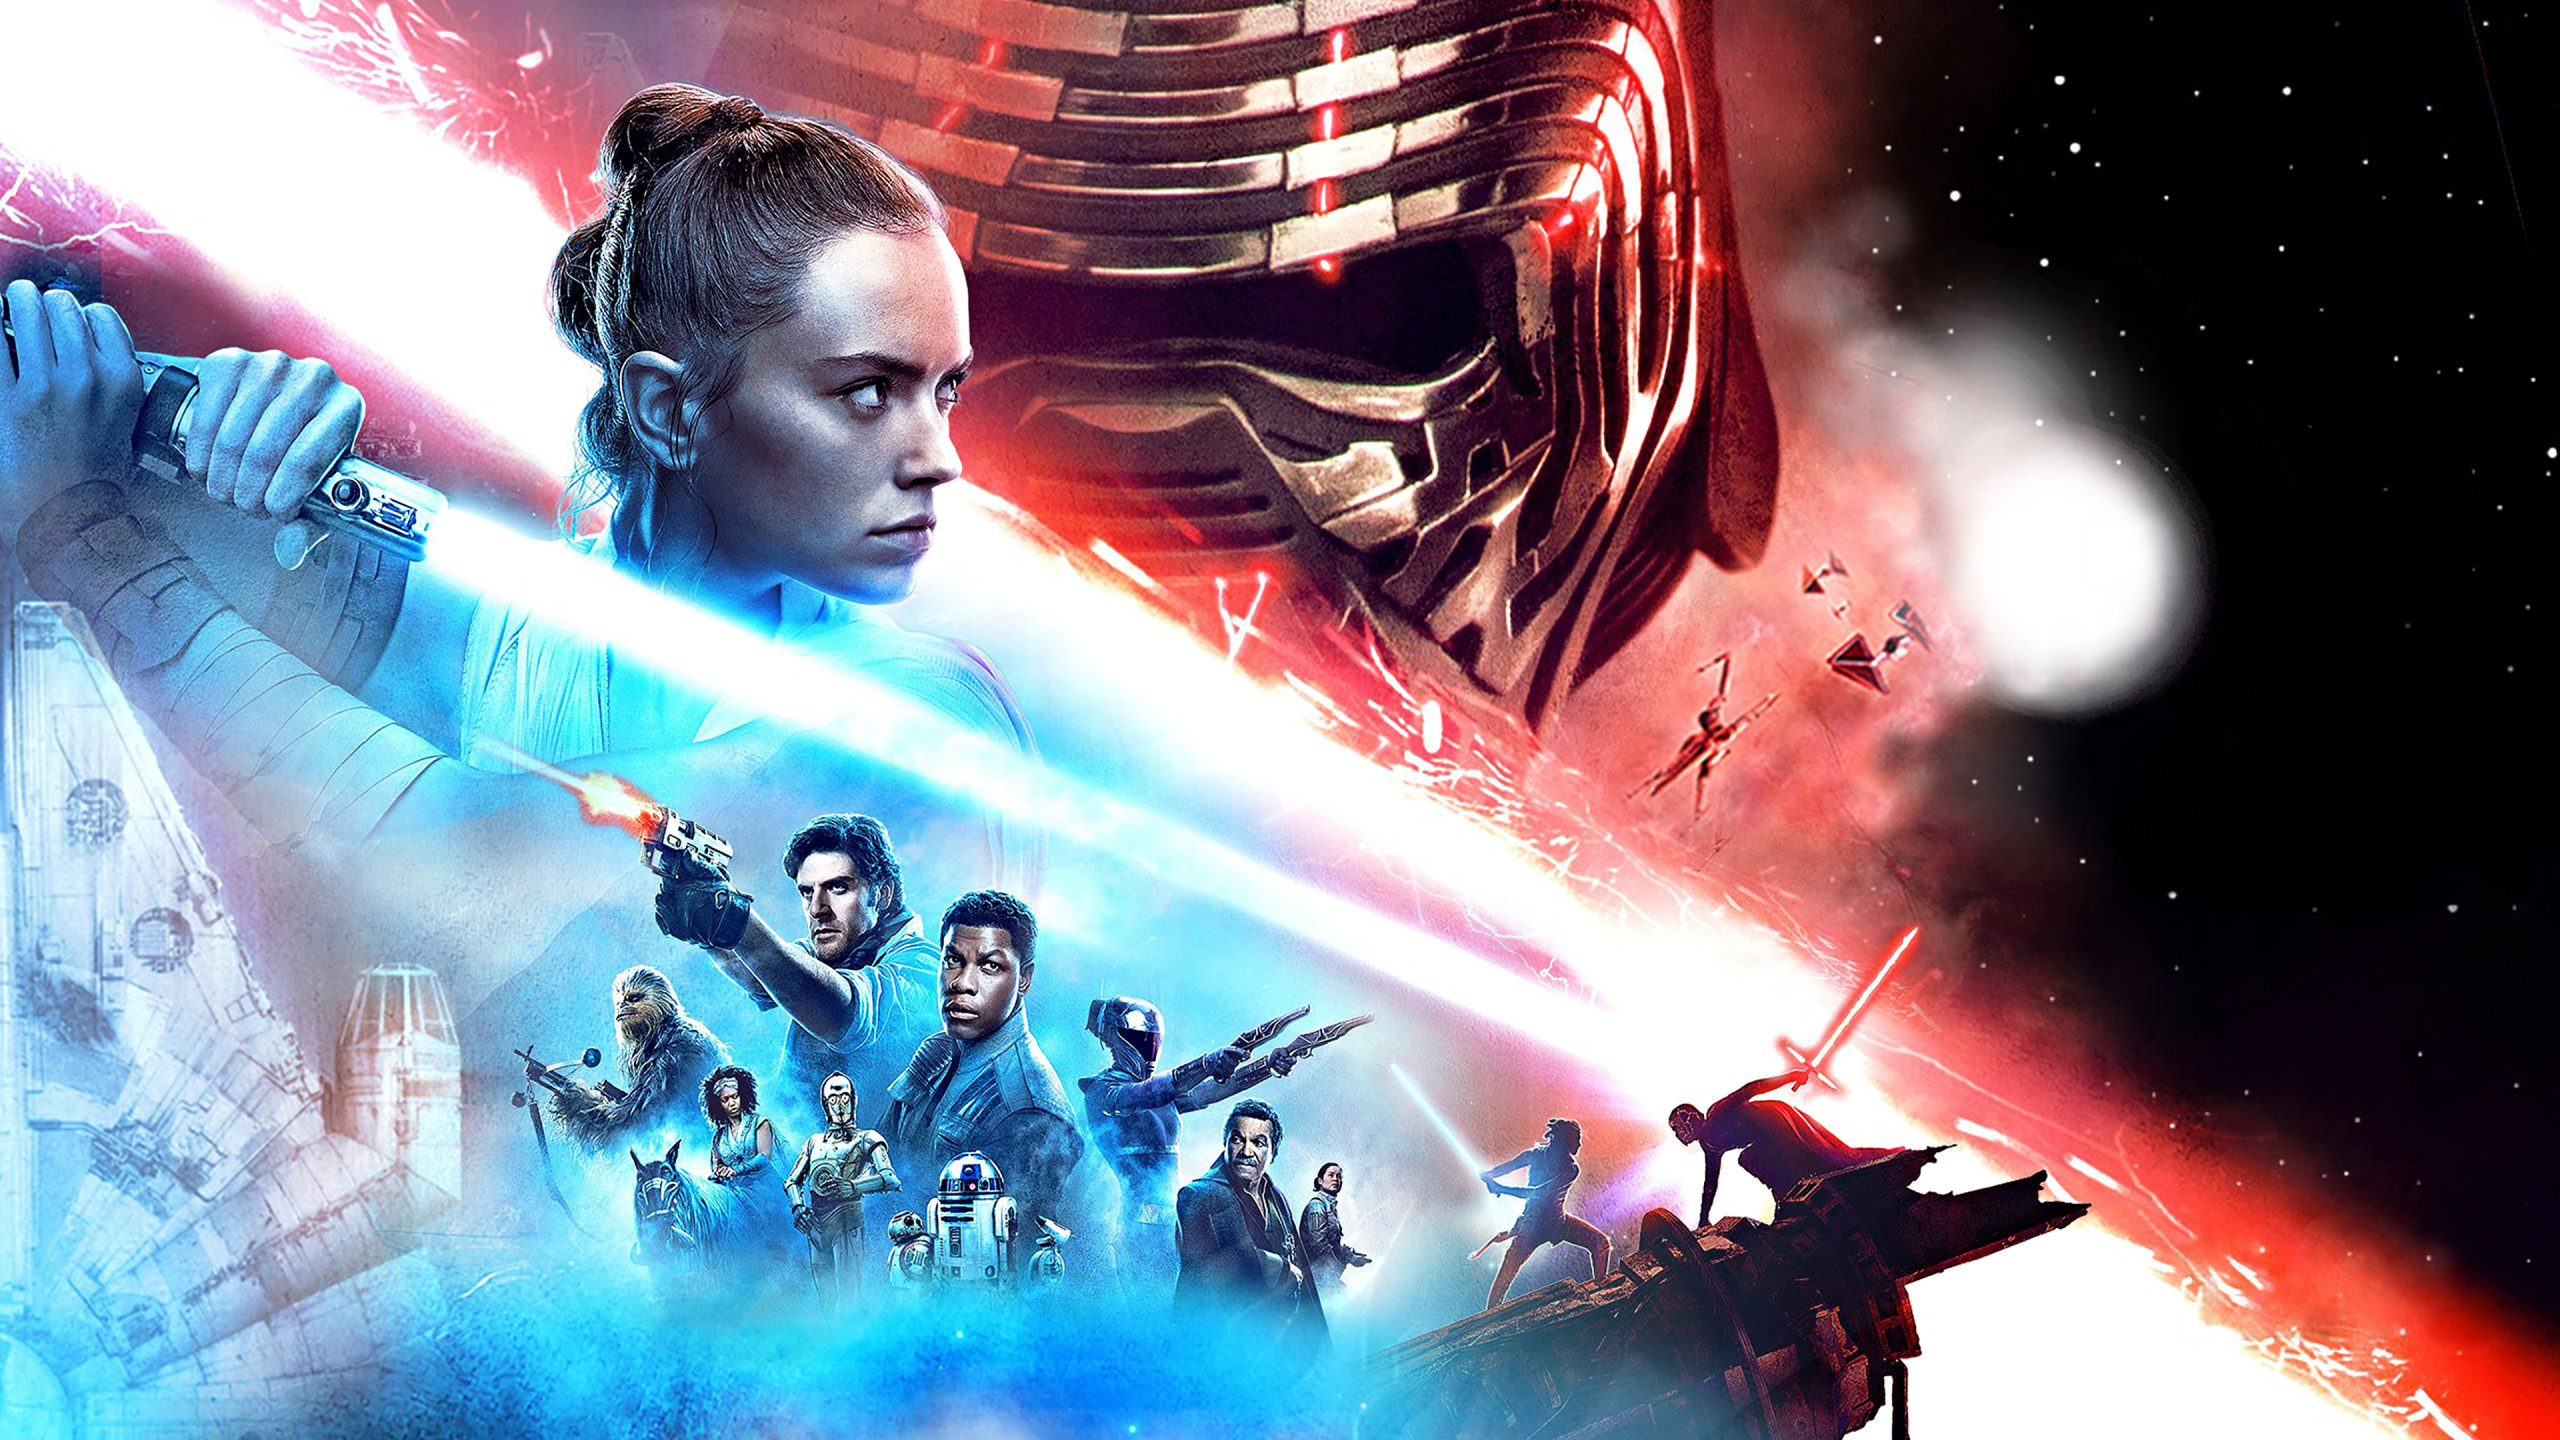 Episode IX Star Wars: The Rise of Skywalker wallpaper 2560x1440